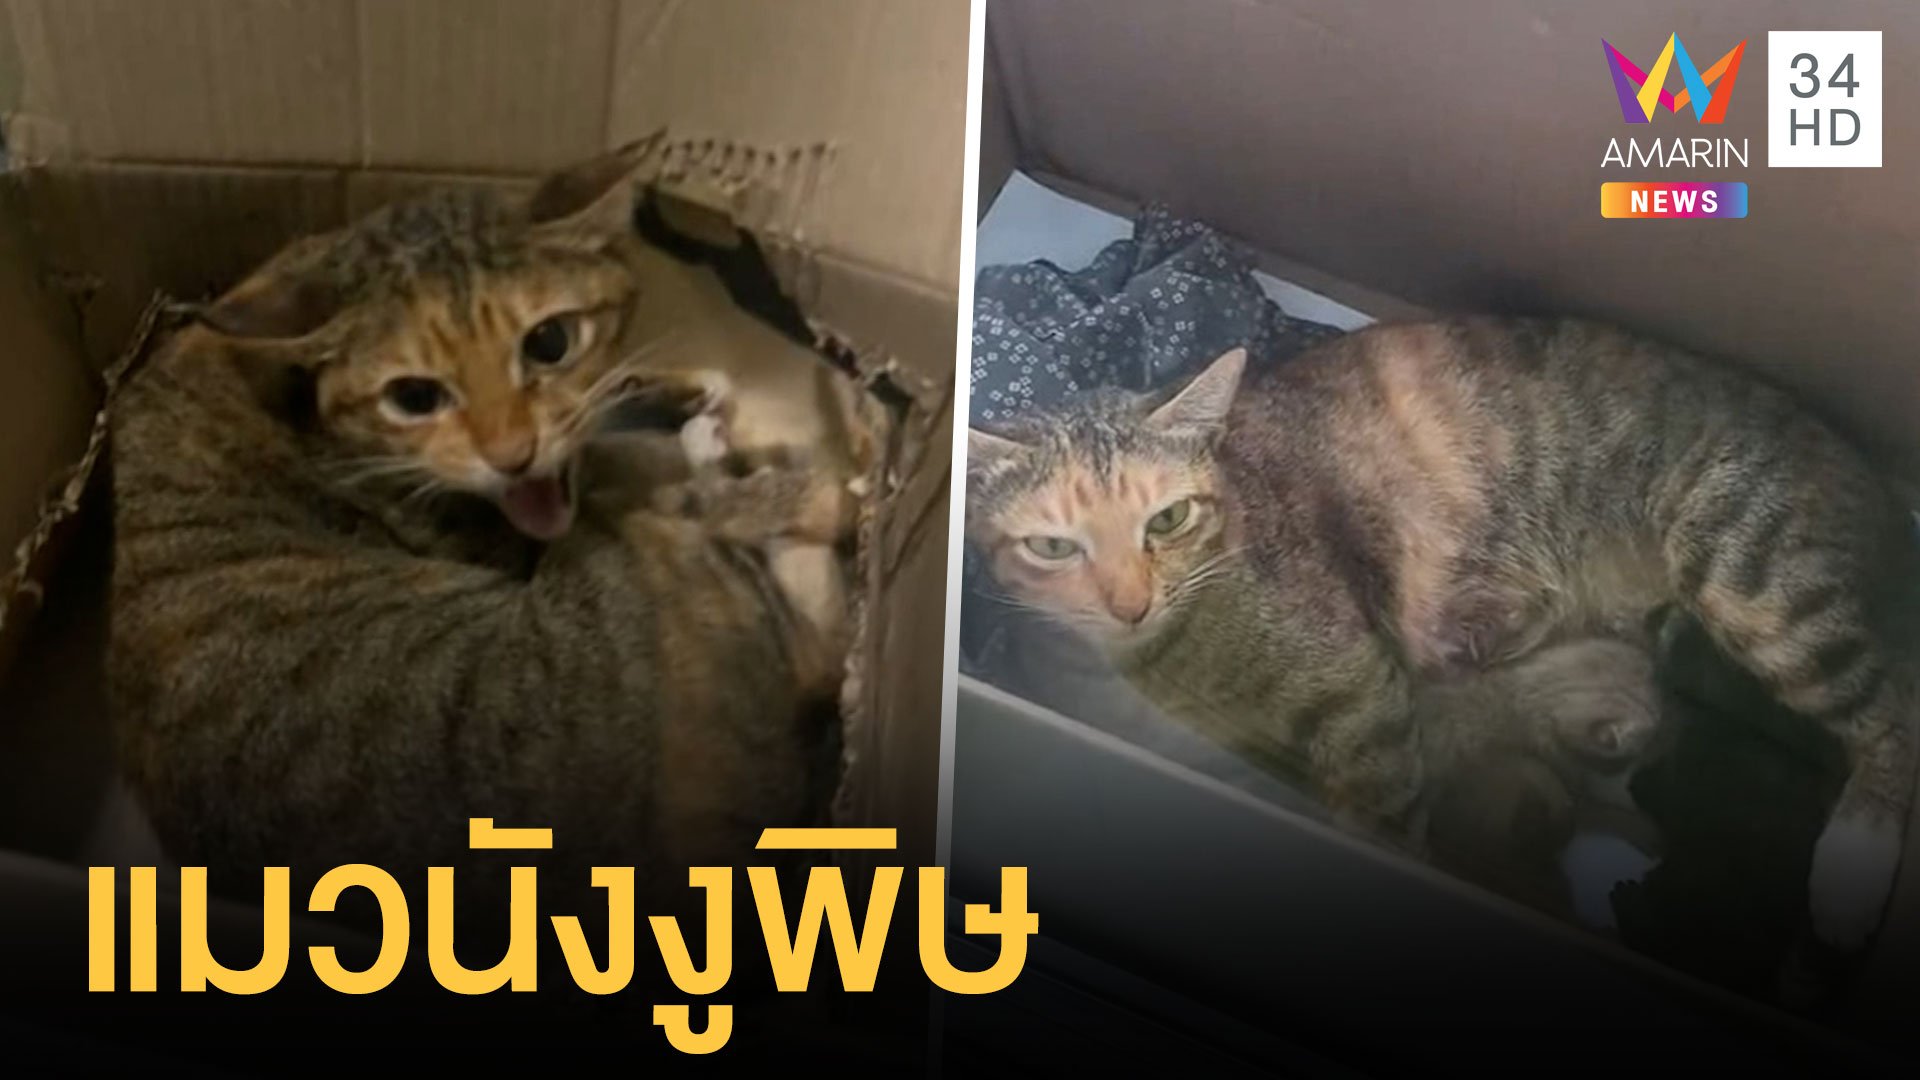 สาววางกล่องไว้ แมวแม่ลูกอ่อนมาคลอด แถมขู่ใส่ | ข่าวอรุณอมรินทร์ สุดสัปดาห์ | 26 ก.ย. 64 | AMARIN TVHD34